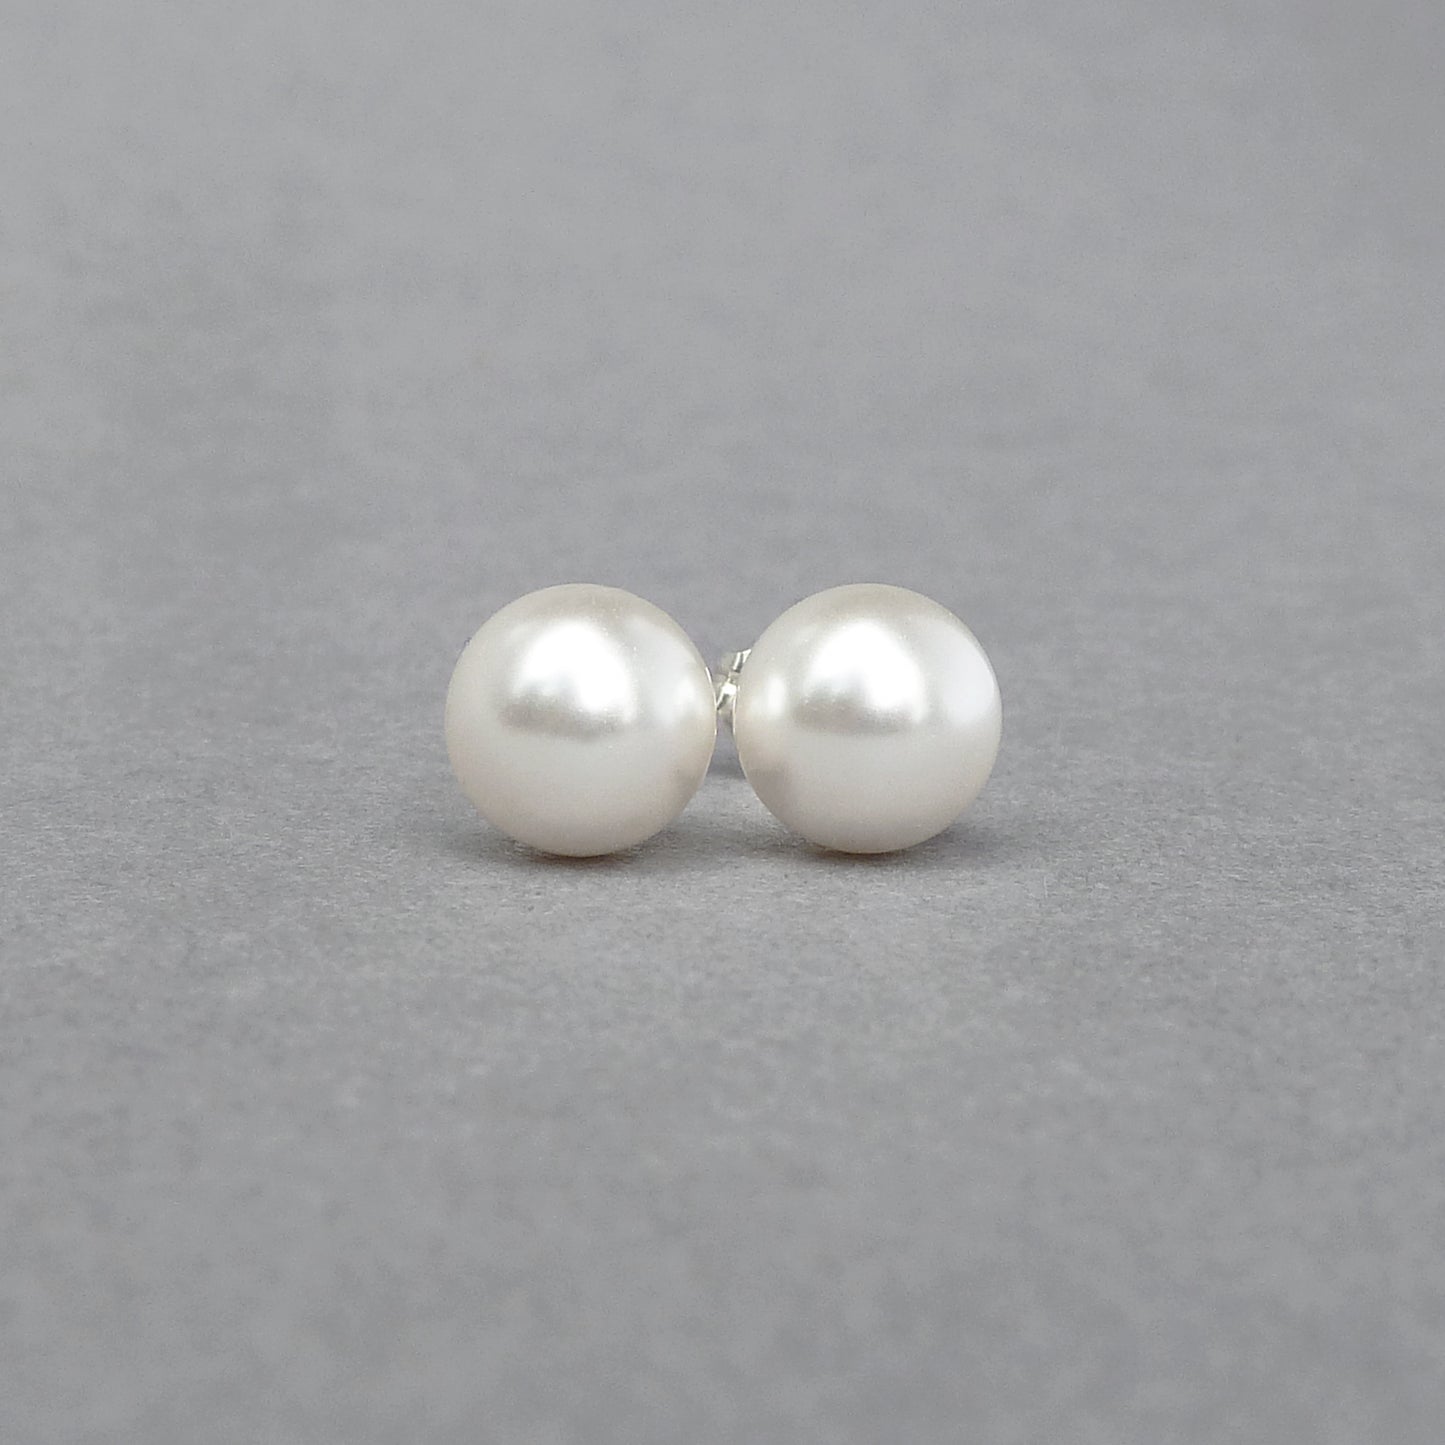 8mm white pearl stud earrings